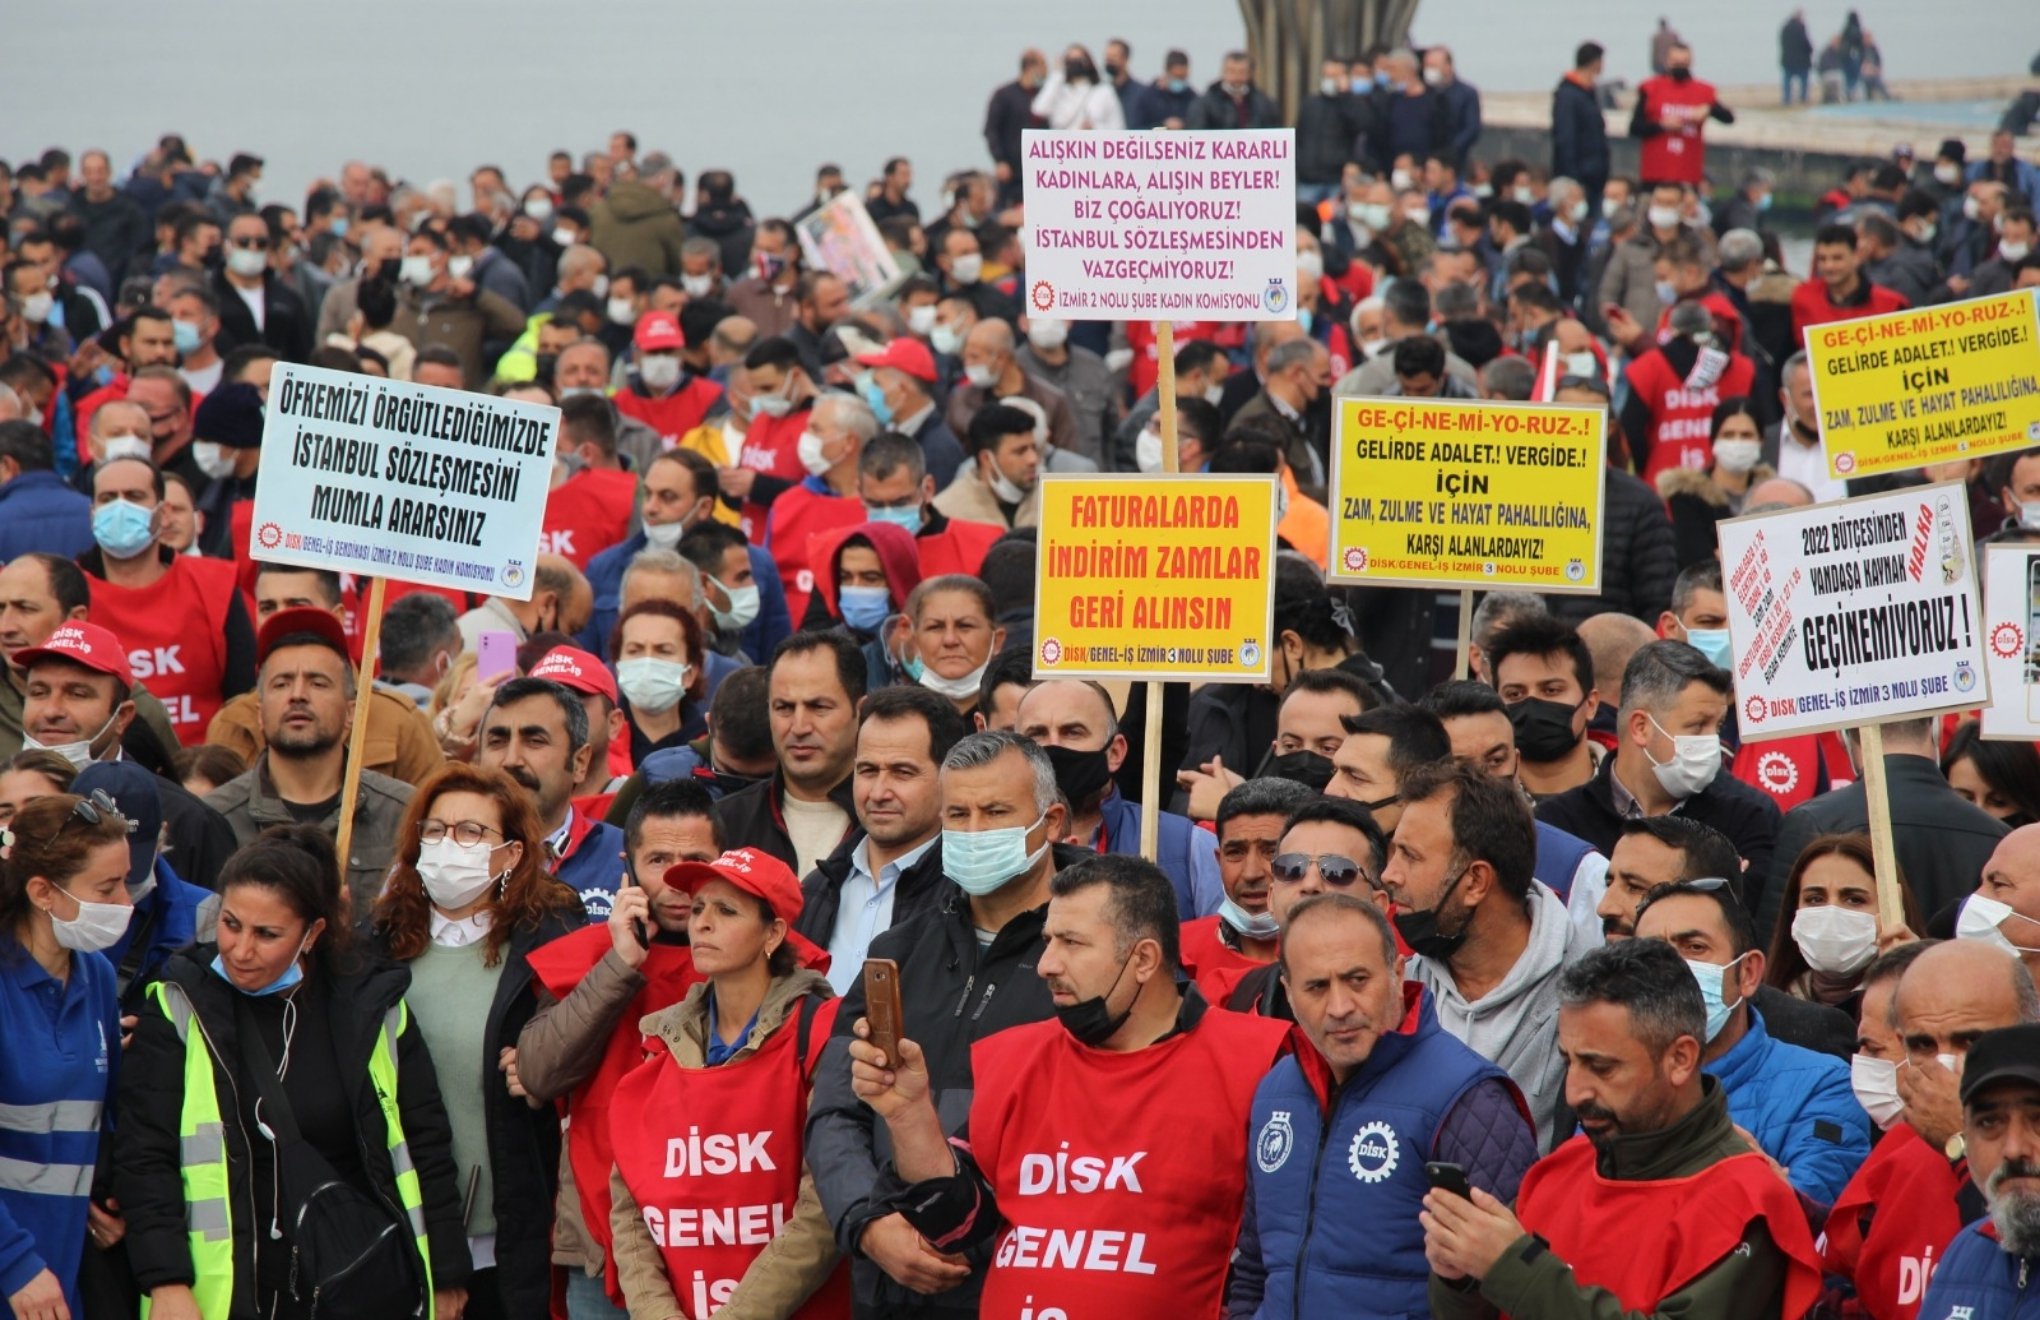 İzmir’de “Geçinemiyoruz” diyen işçiler sokağa çıktı